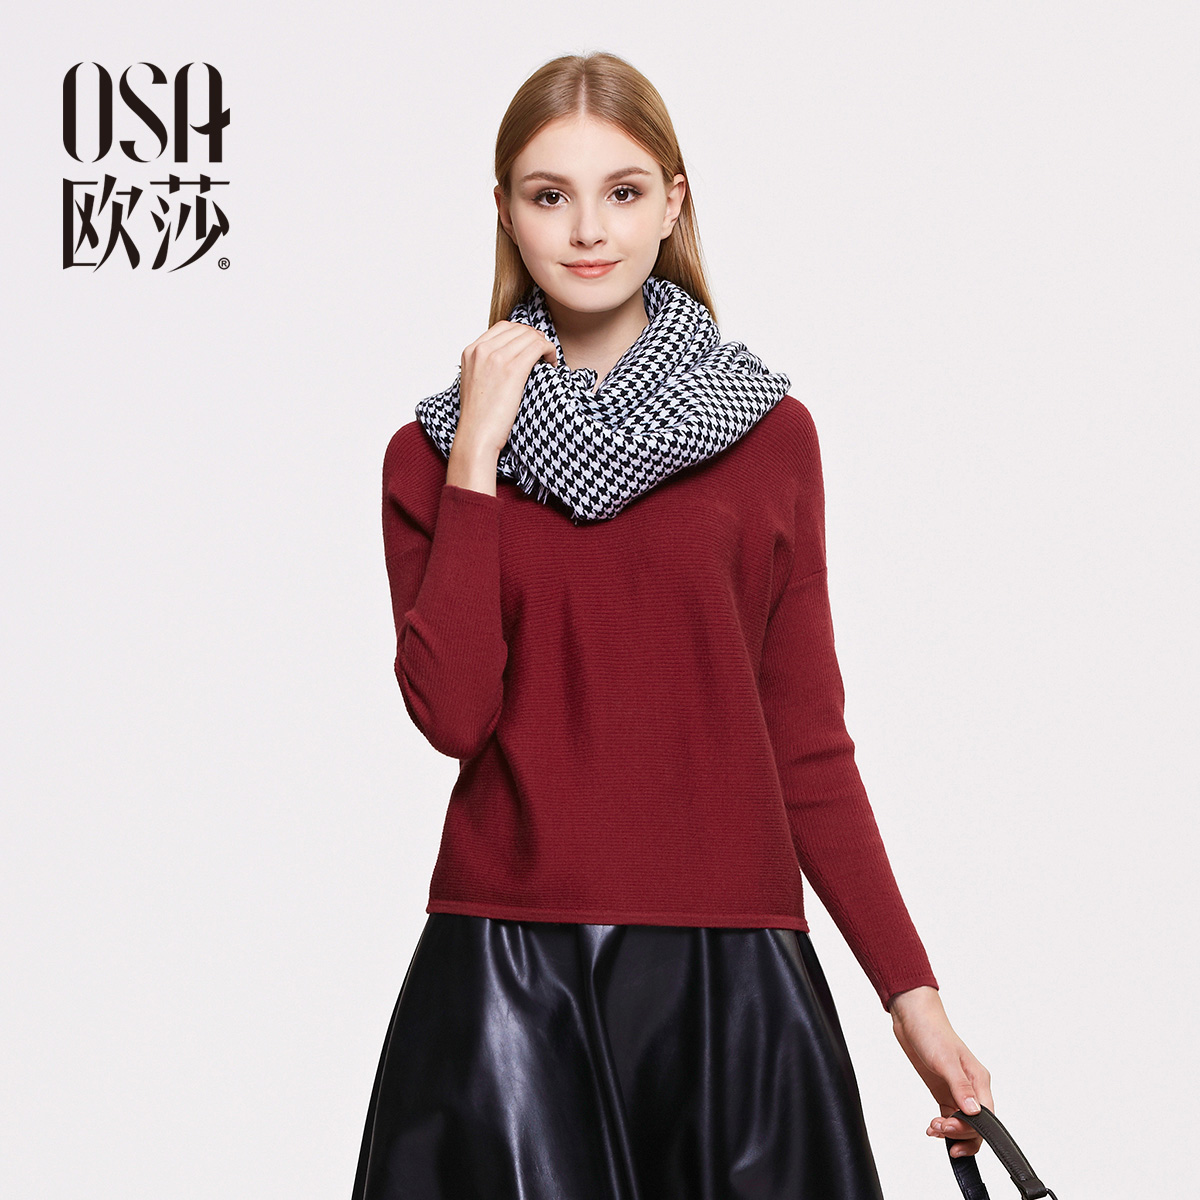 OSA欧莎2015冬季新品女装 时尚落肩长袖套头毛针织衫SE512099